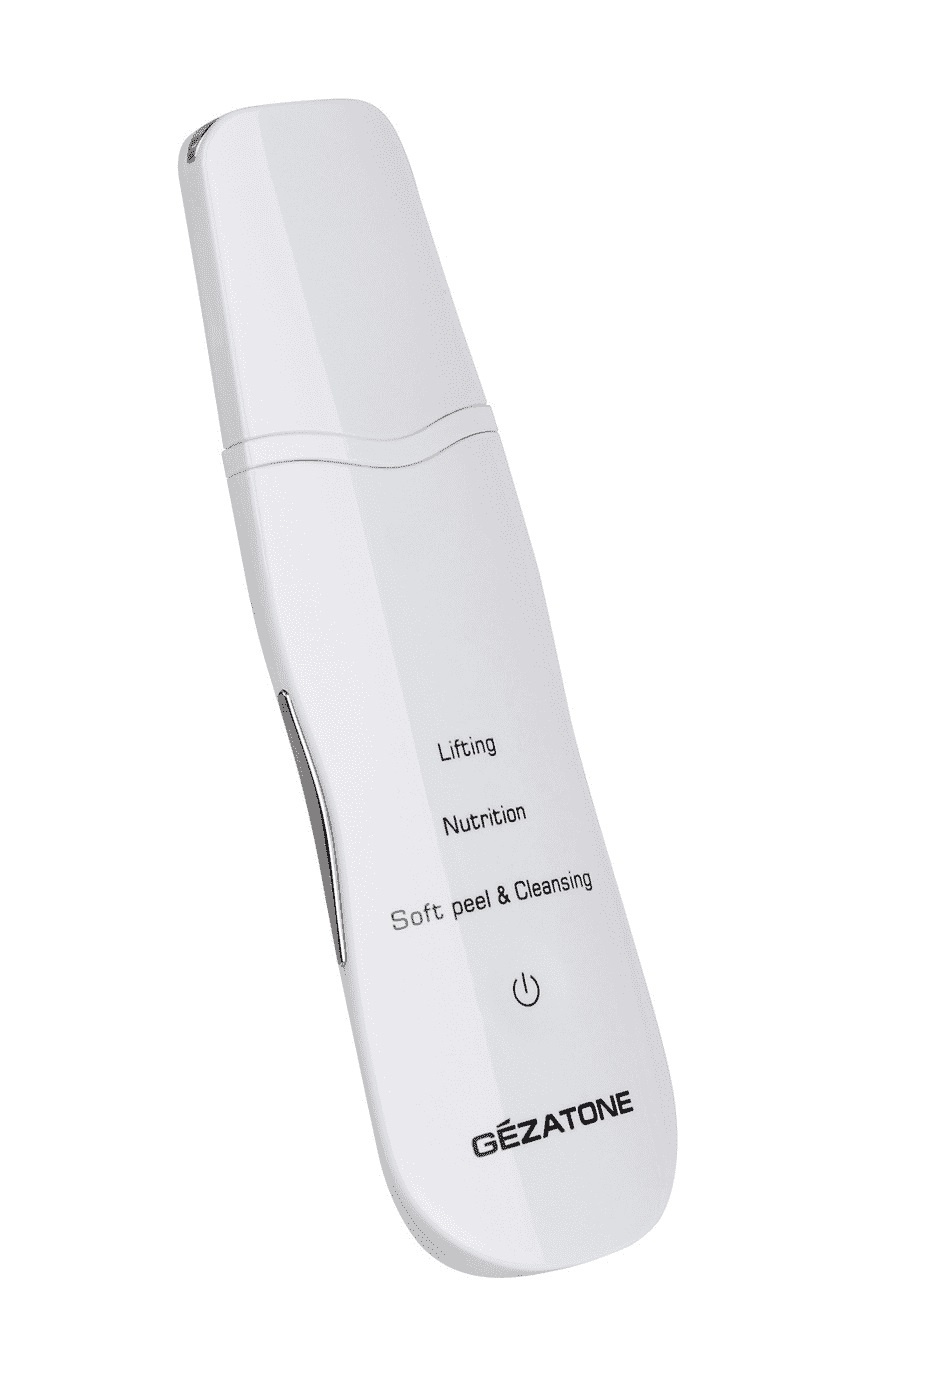 Аппарат для ультразвуковой чистки лица Gezatone BON-990 gezatone biolift4 m100 s массажер для лица с 3 функциями